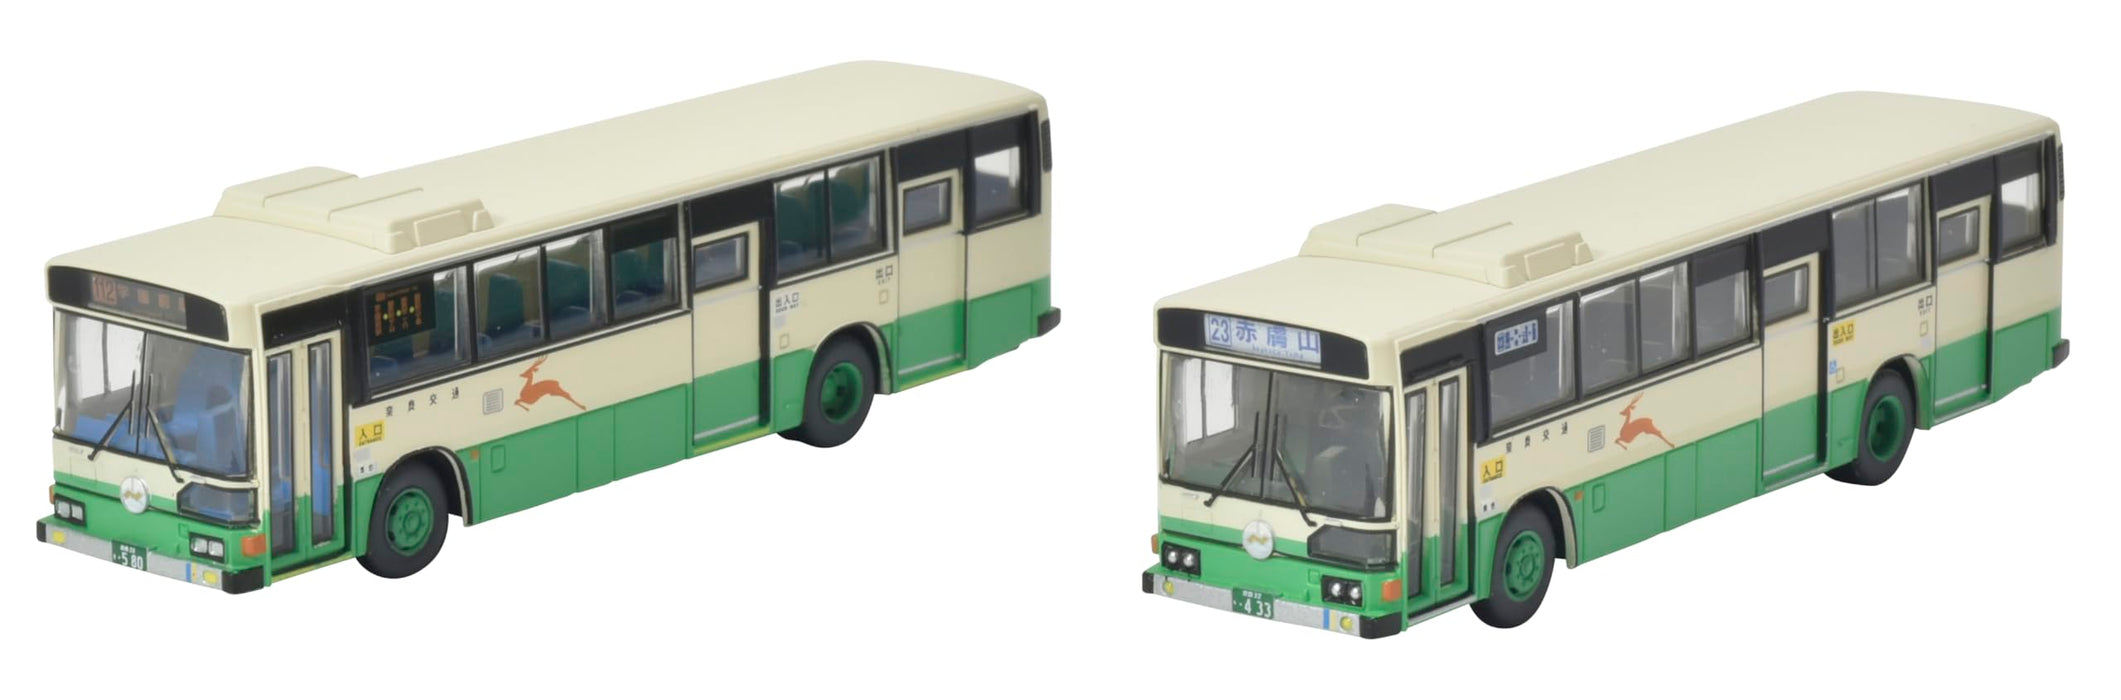 Tomytec Nara Kotsu 80th Anniversary Set Bus Collection Diorama Pack of 2